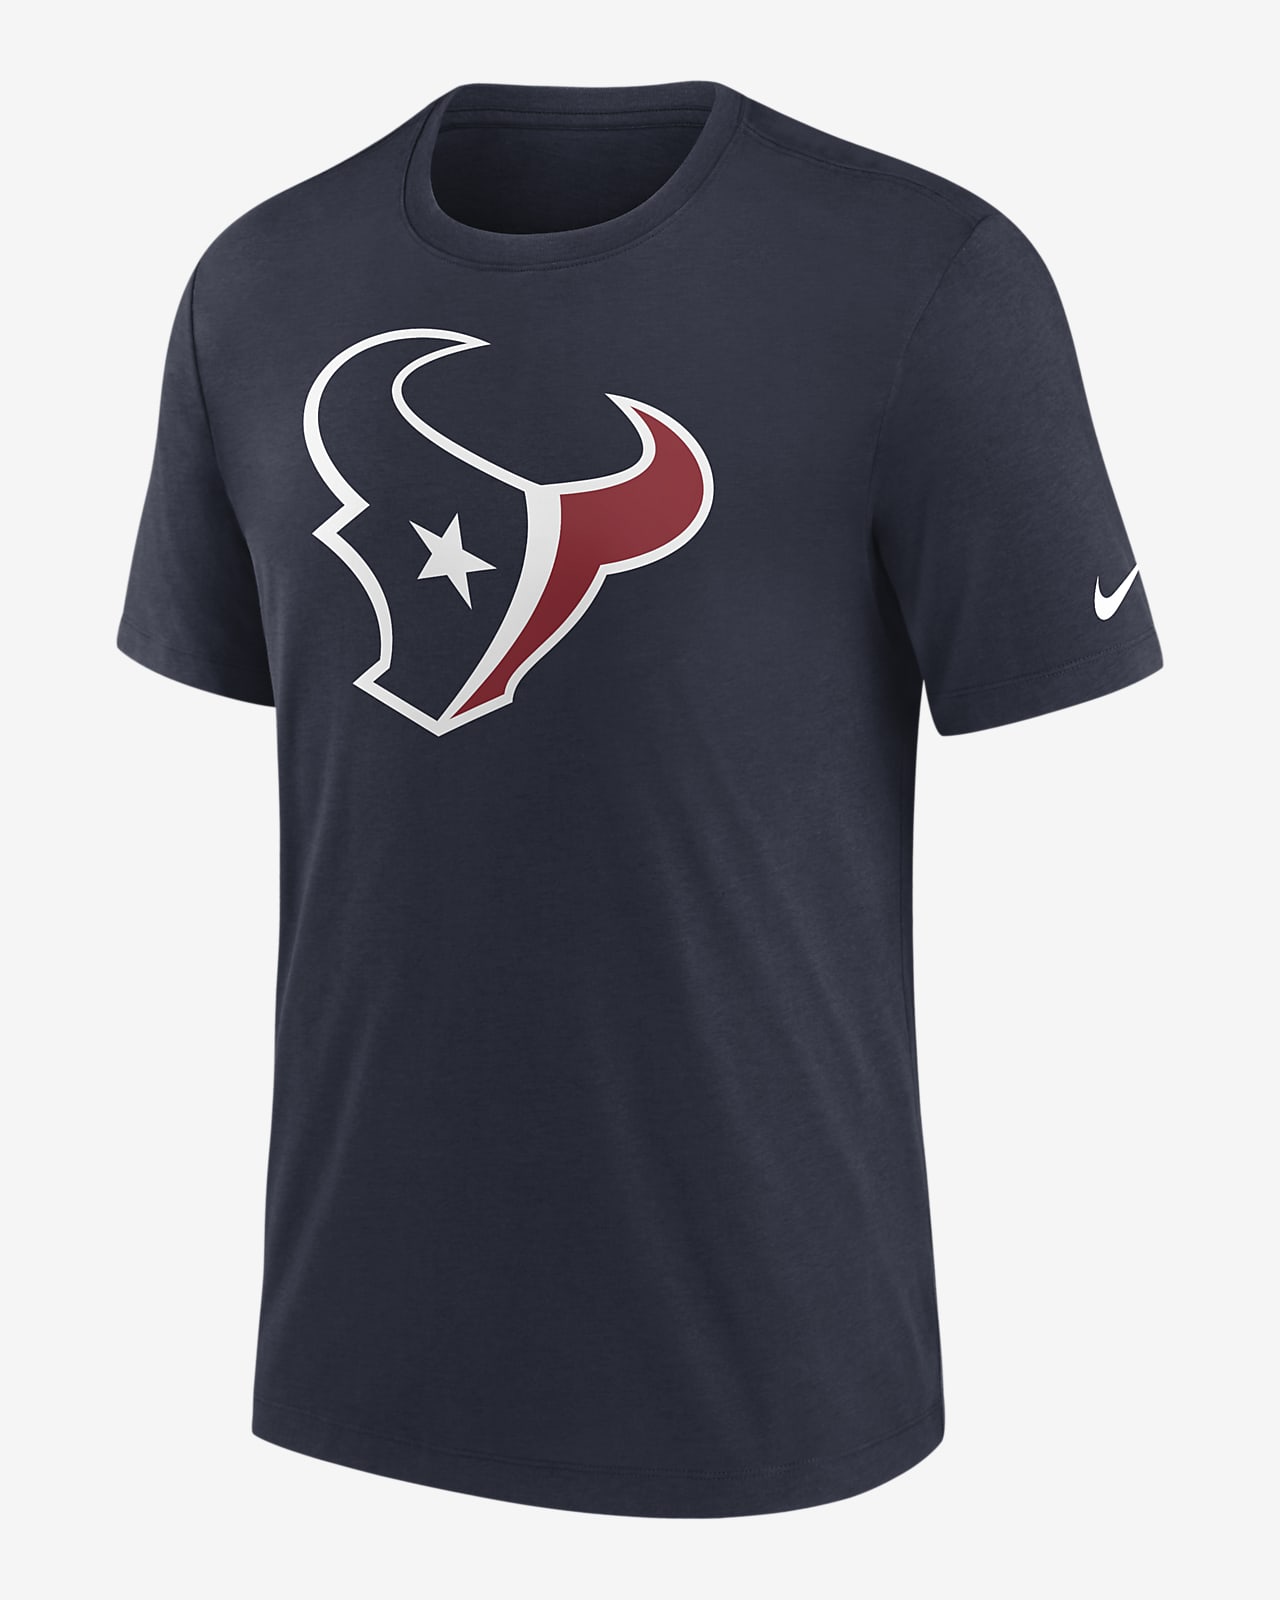 Playera Nike NFL para hombre Houston Texans Rewind Logo